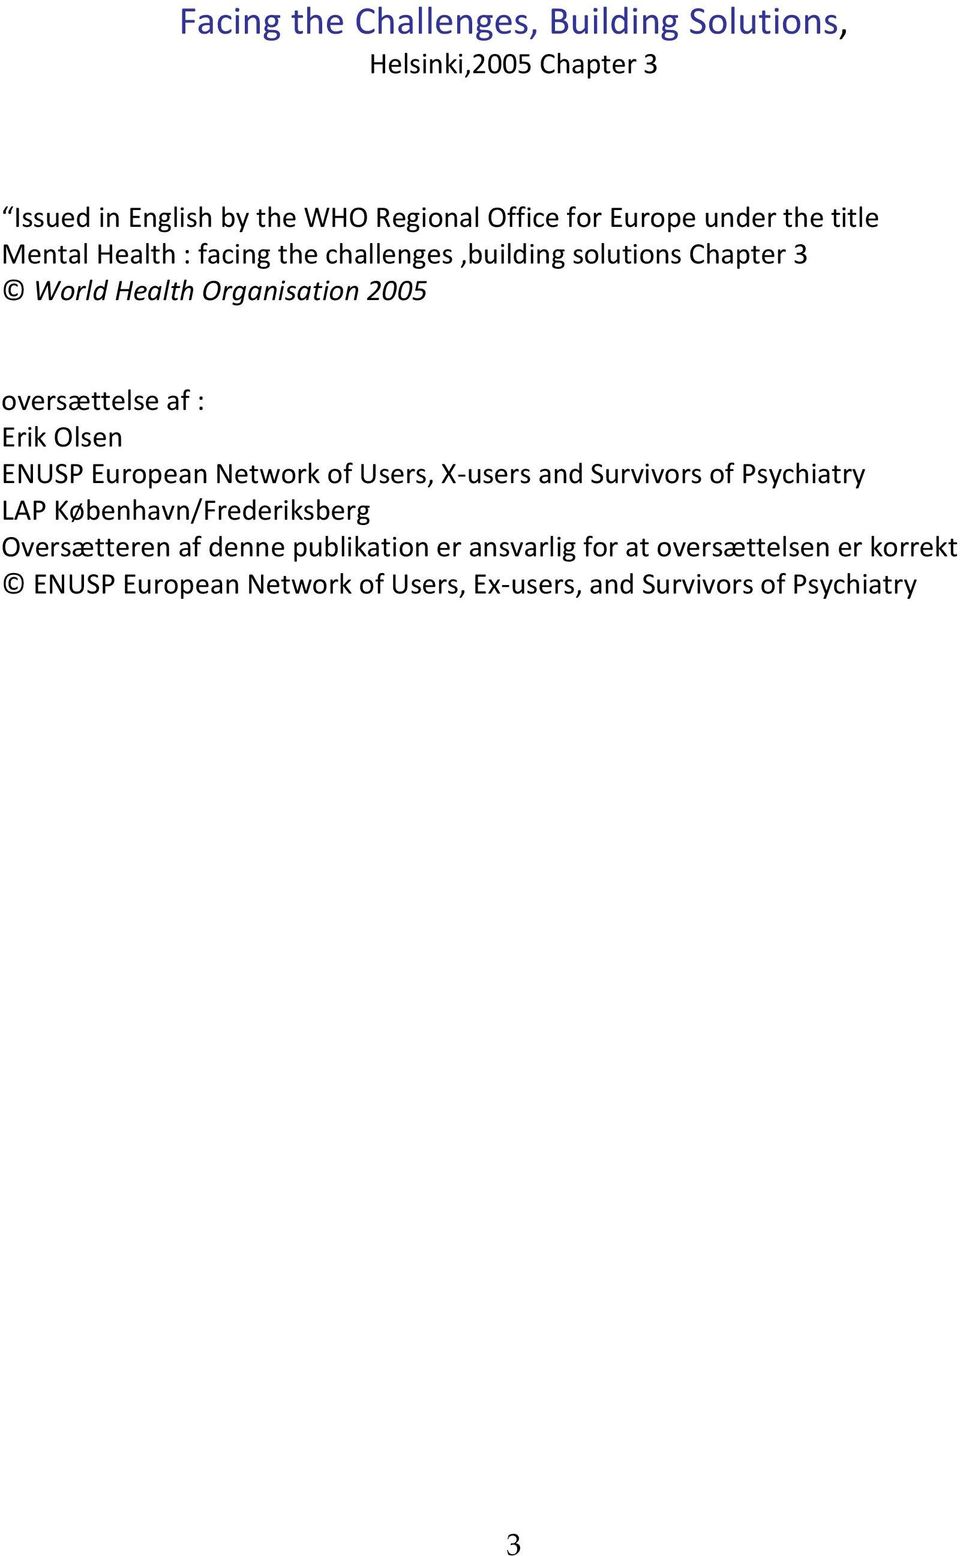 Erik Olsen ENUSP European Network of Users, X-users and Survivors of Psychiatry LAP København/Frederiksberg Oversætteren af